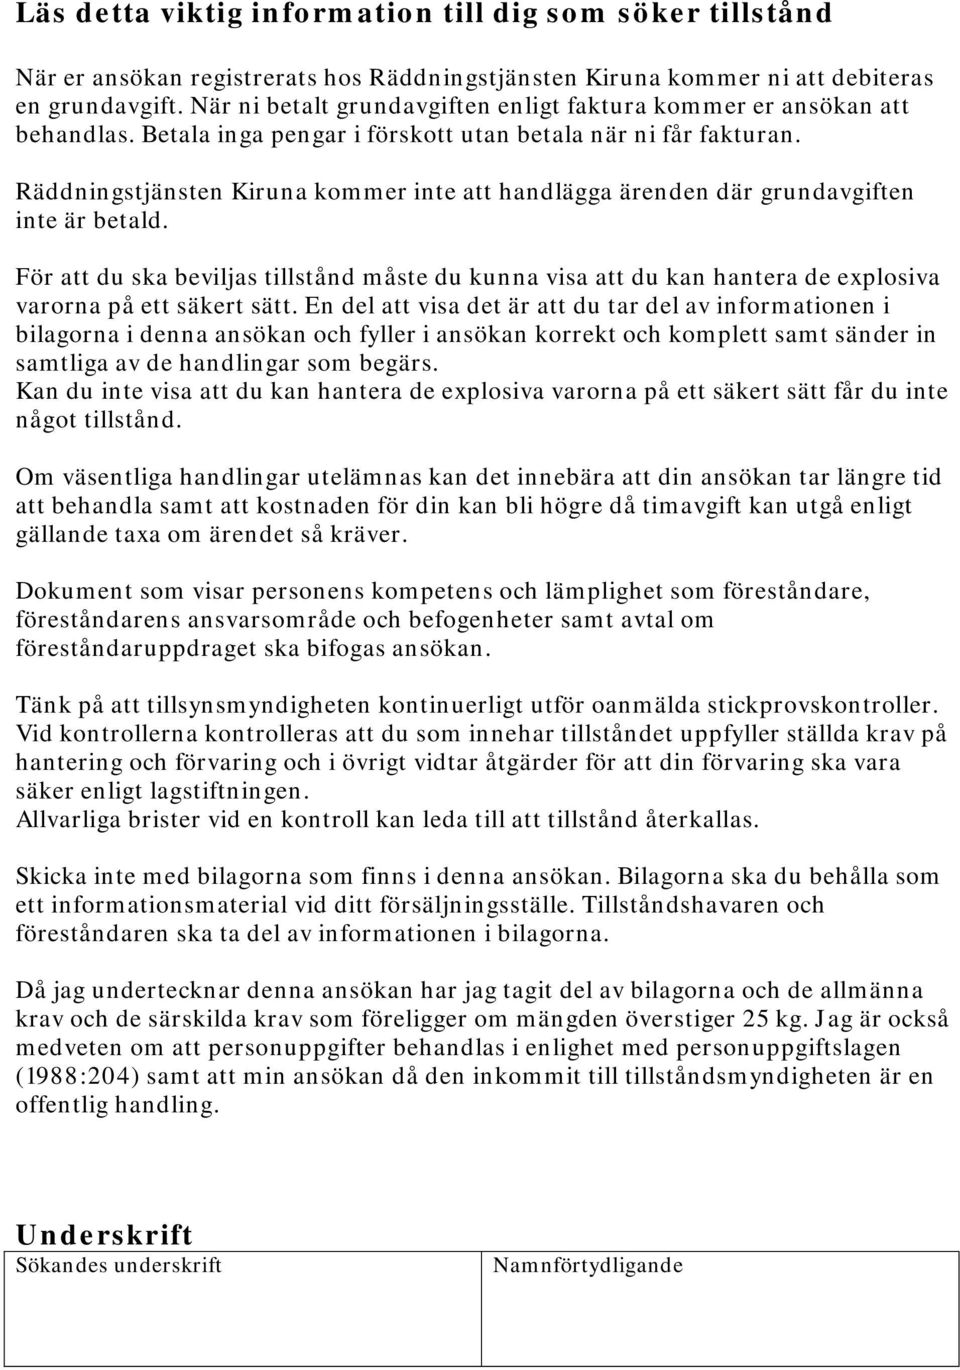 Räddningstjänsten Kiruna kommer inte att handlägga ärenden där grundavgiften inte är betald.